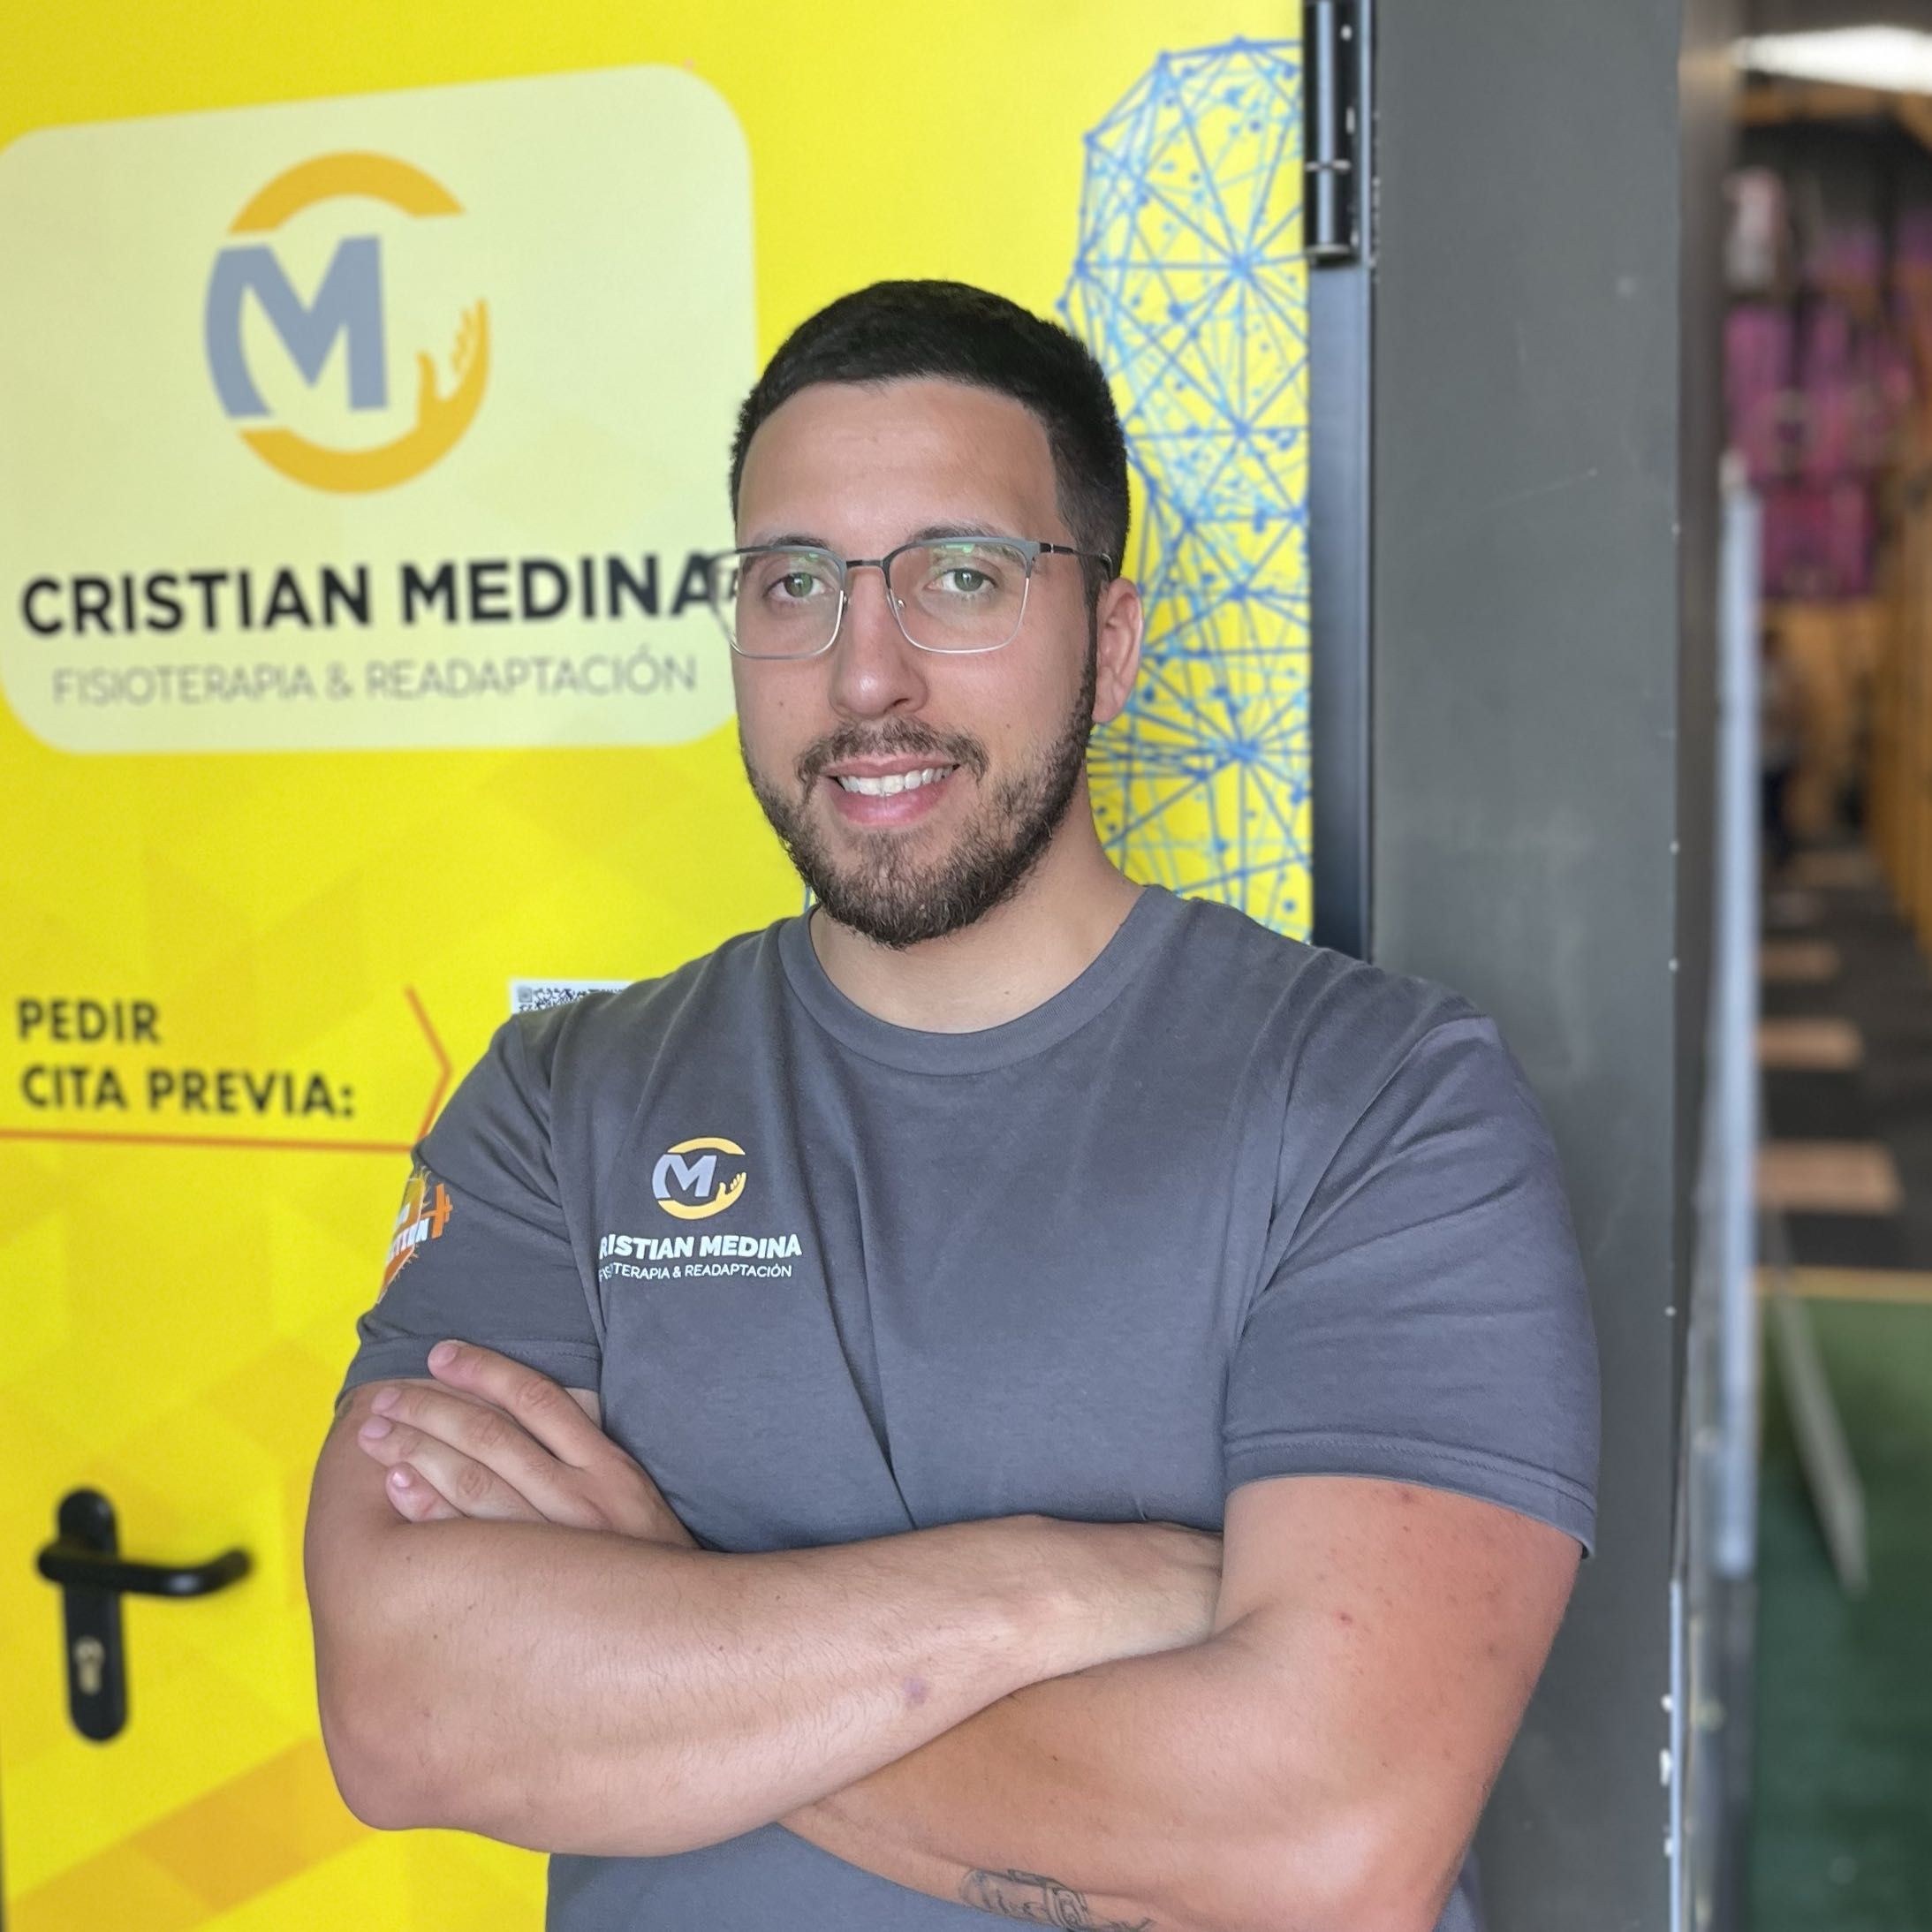 Cristian Medina - Fisioterapia & Readaptación Cristian Medina